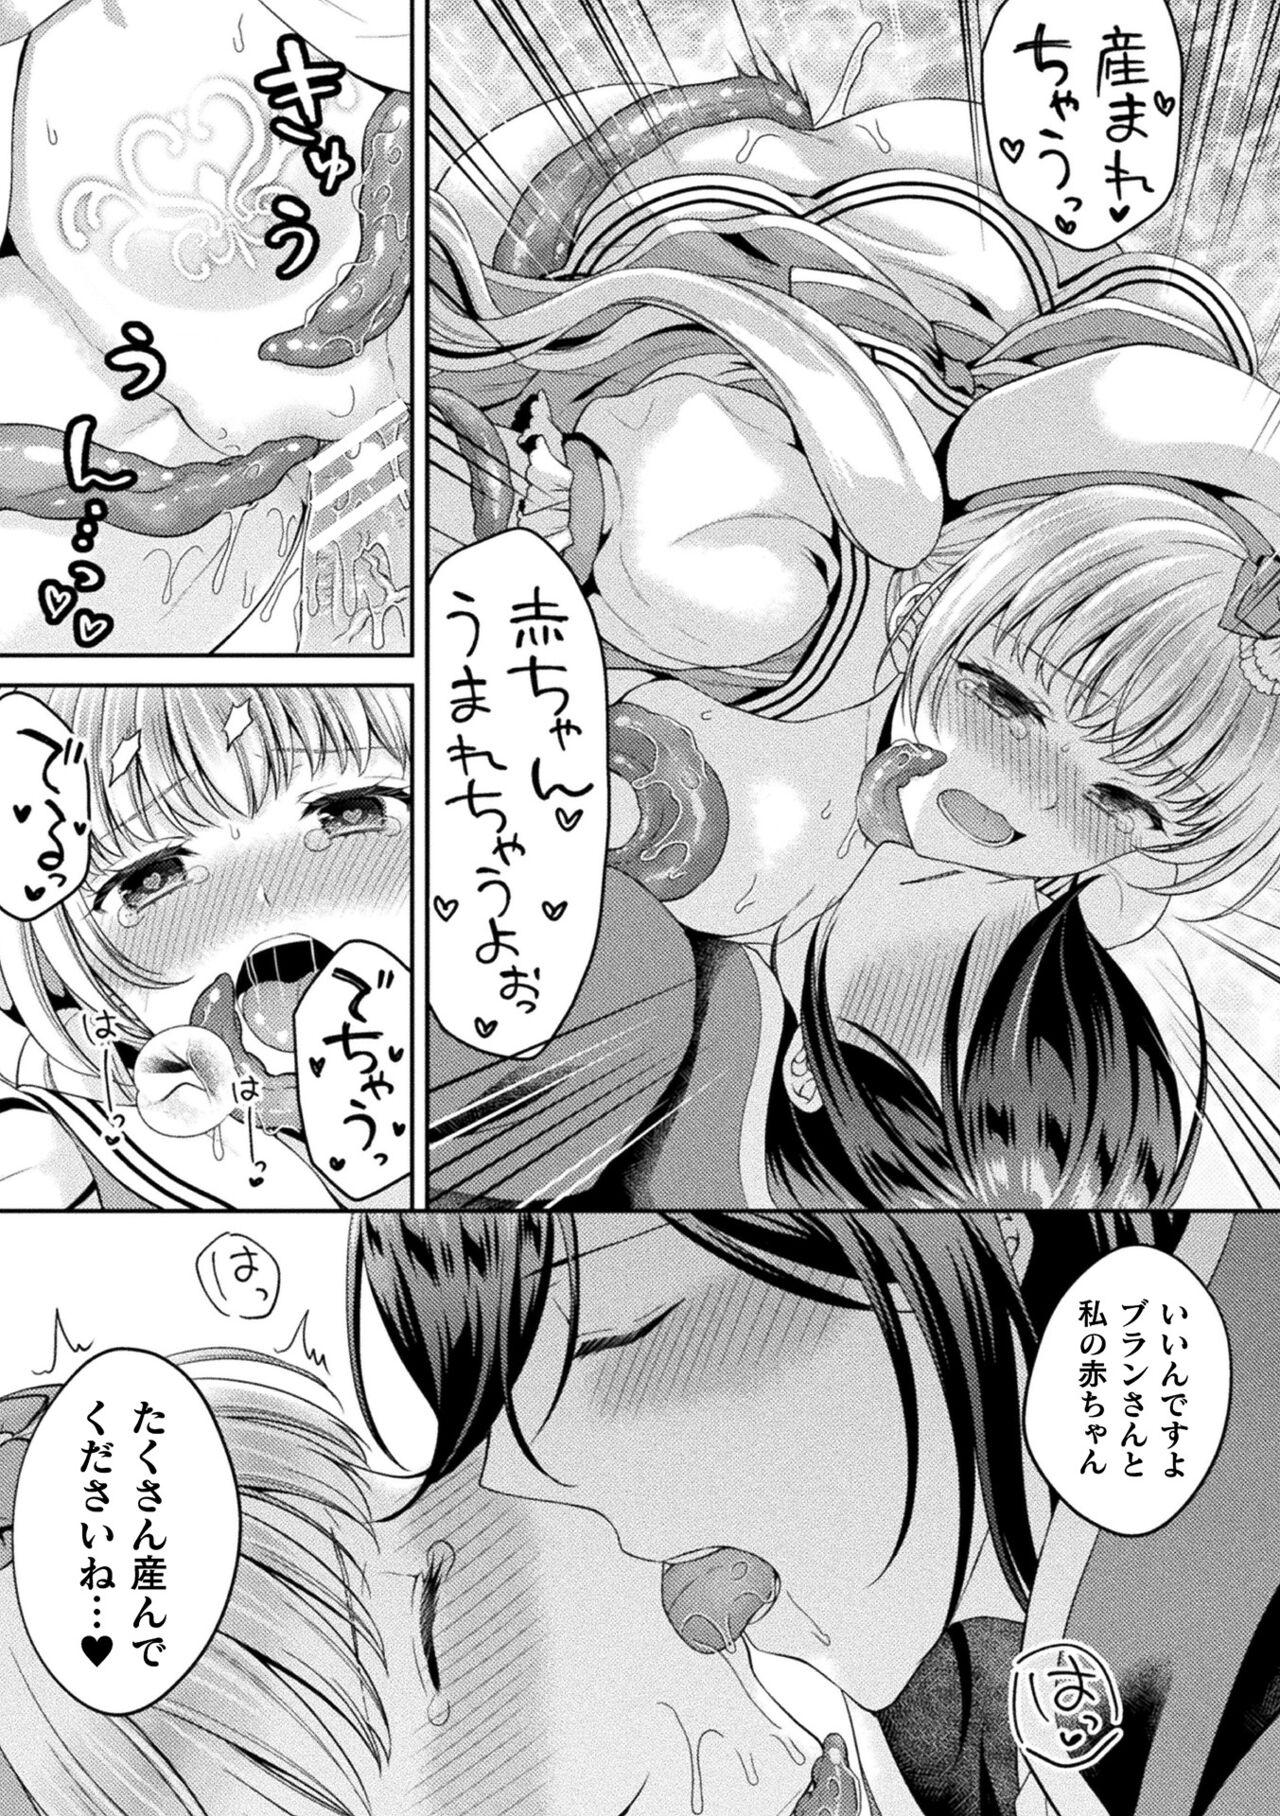 2D Comic Magazine Inmon o Tsukerareta Bishoujo-tachi ga Sanran Acme Ochi! Vol. 1 59